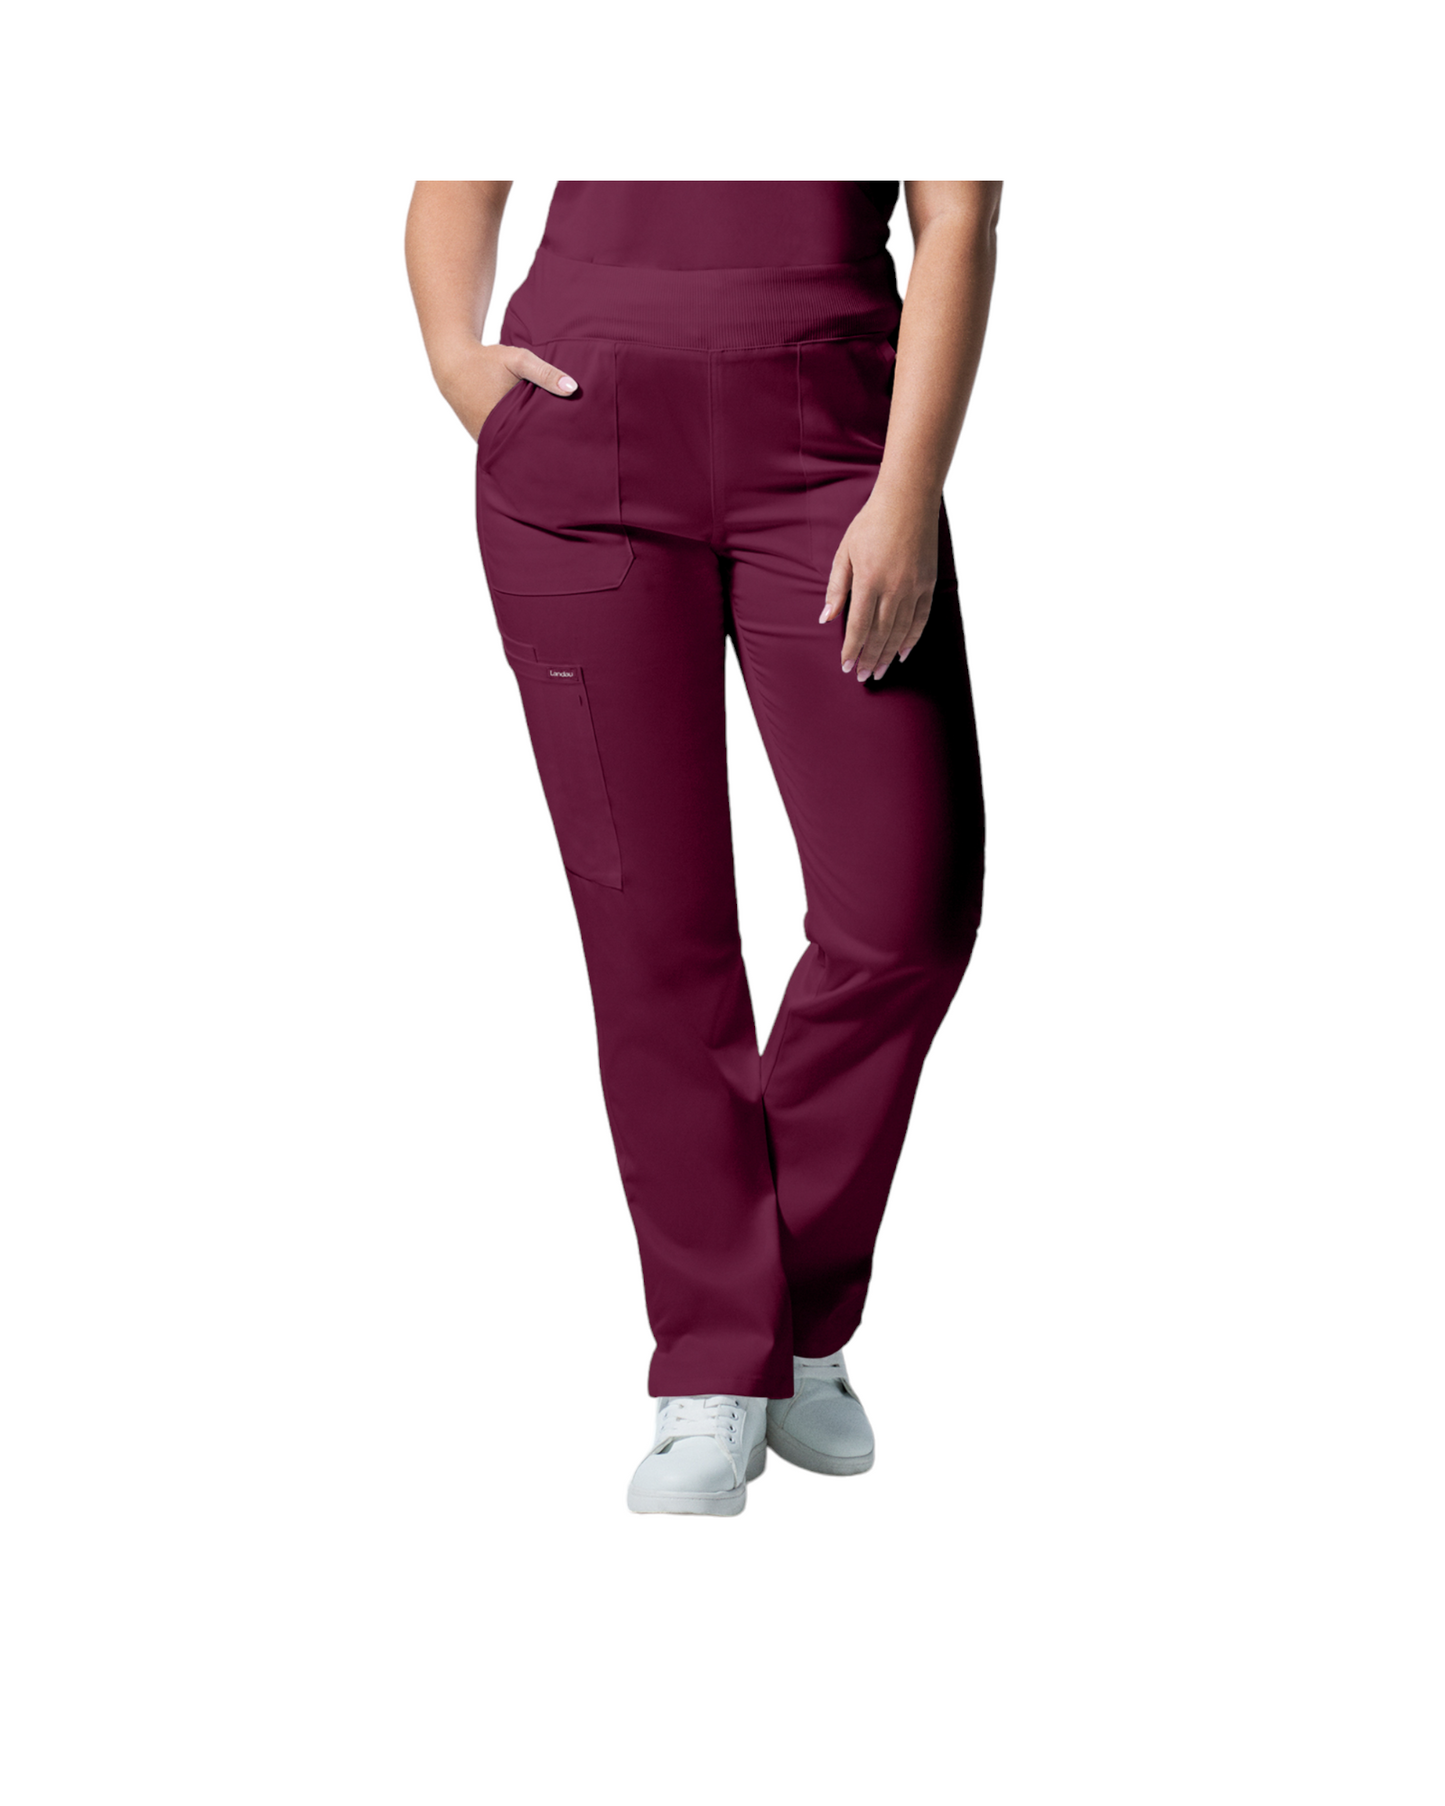 Pantalons  6 poches pour femmes Landau Proflex #LB405 couleur  Bourgogne